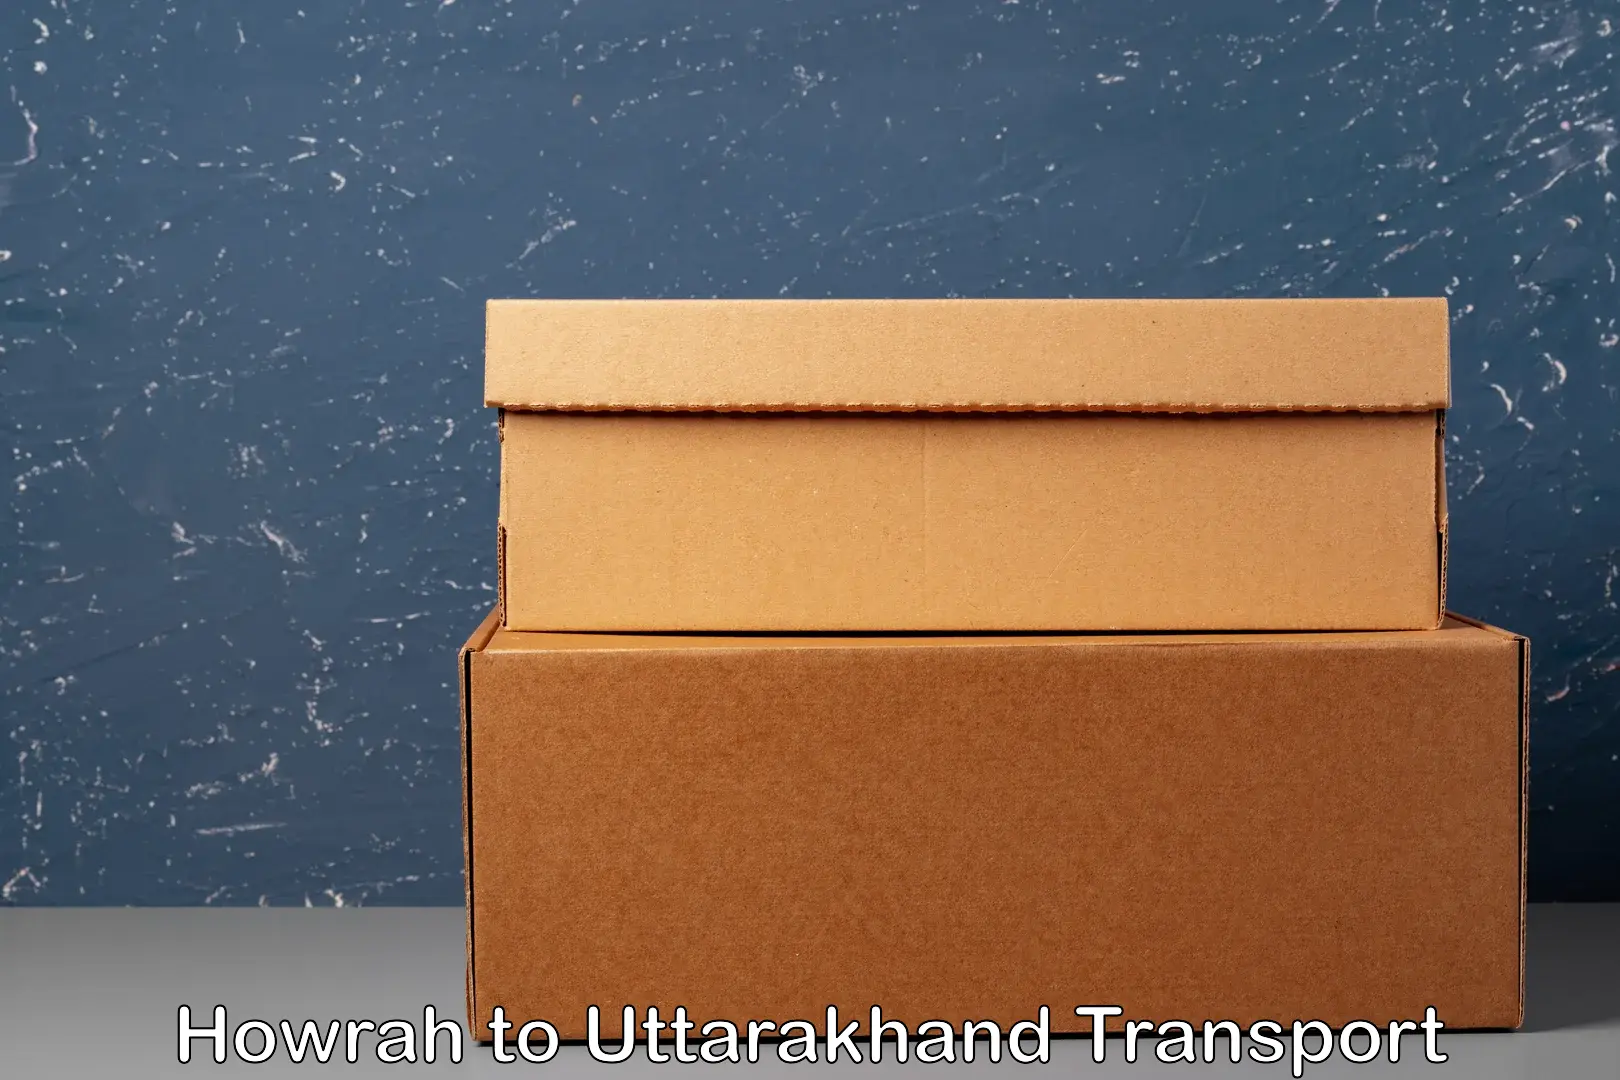 Transport shared services Howrah to Uttarakhand